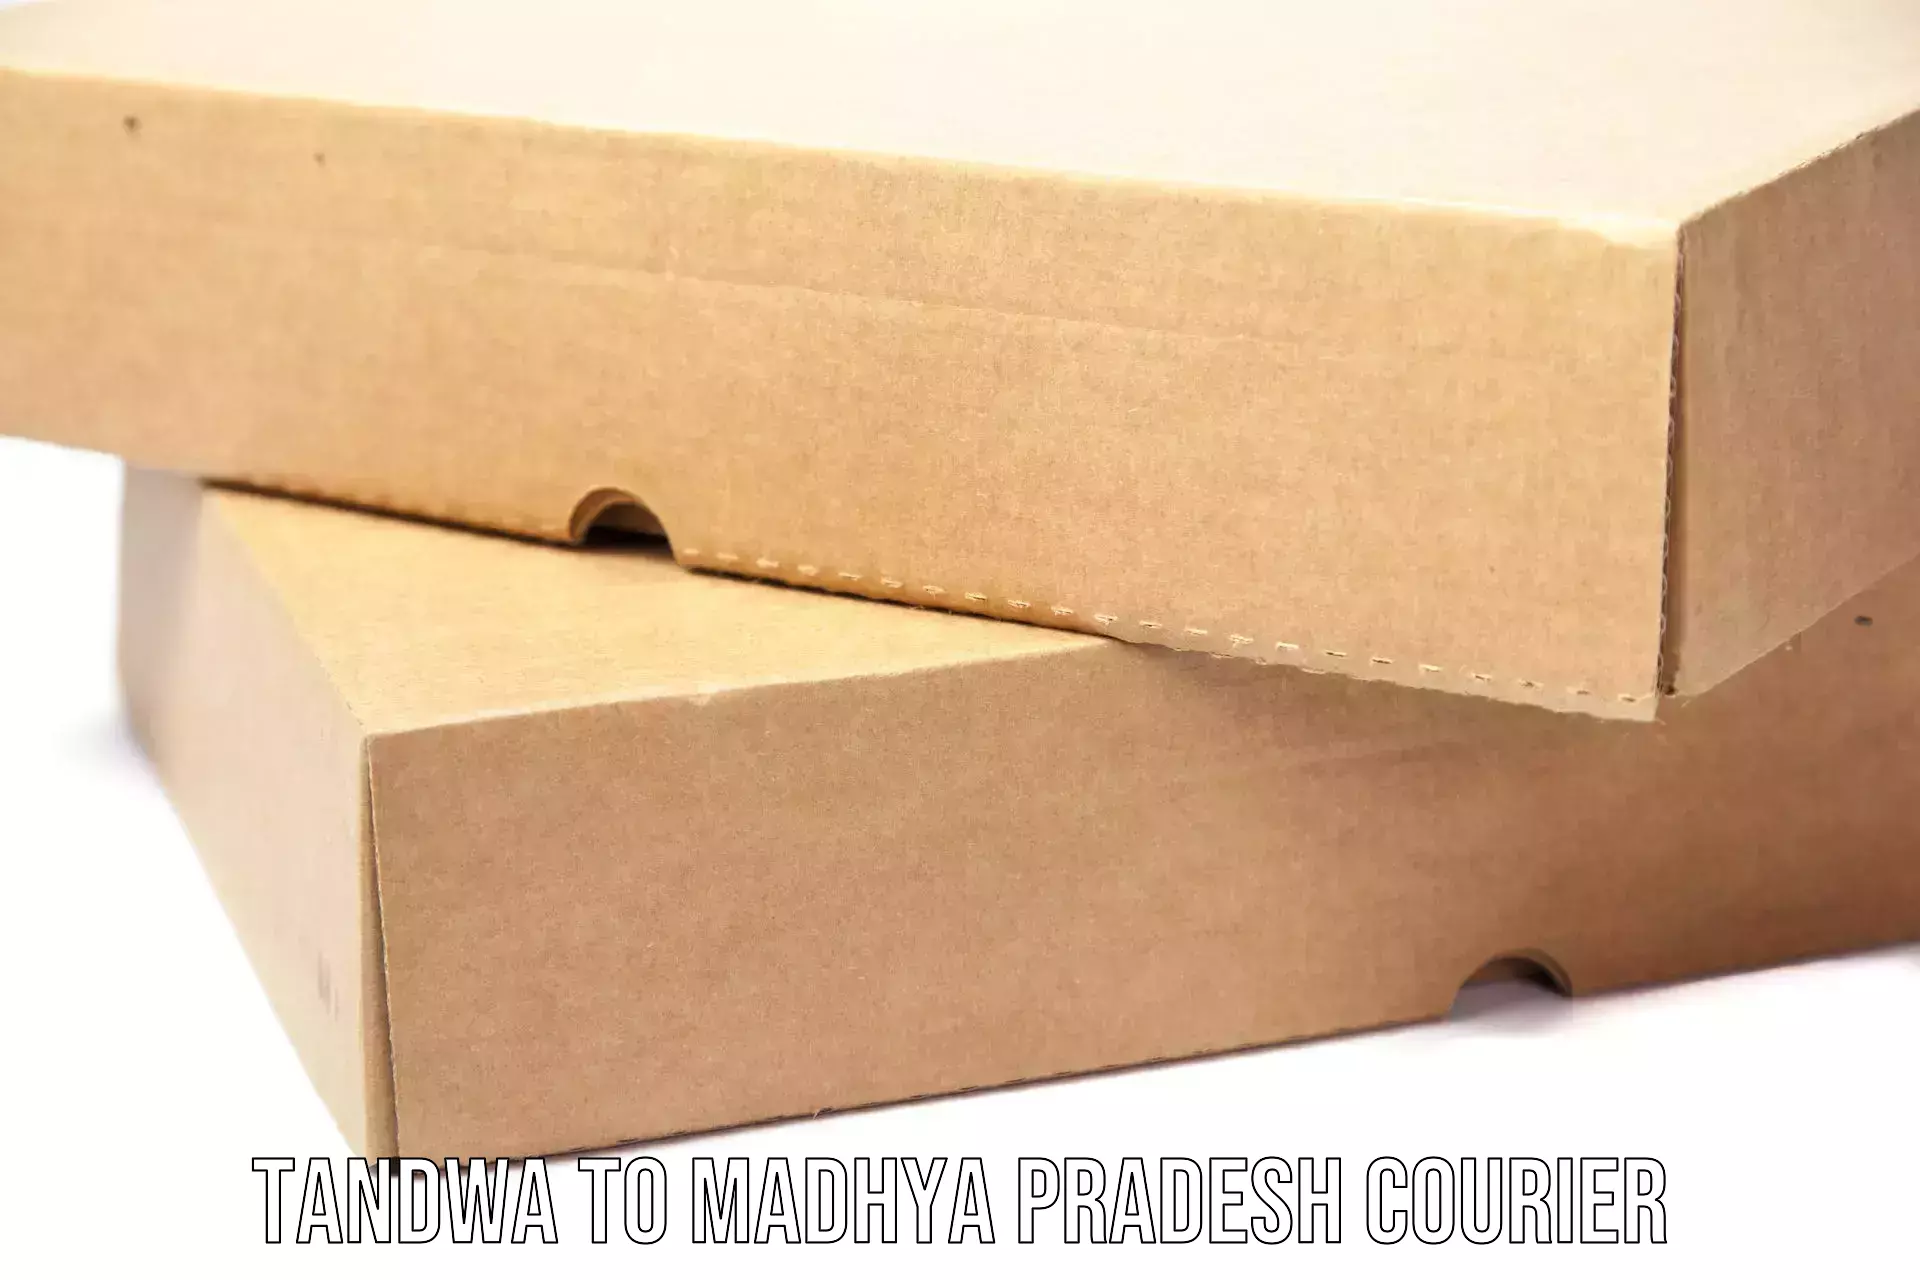 Modern delivery methods Tandwa to Chitrangi